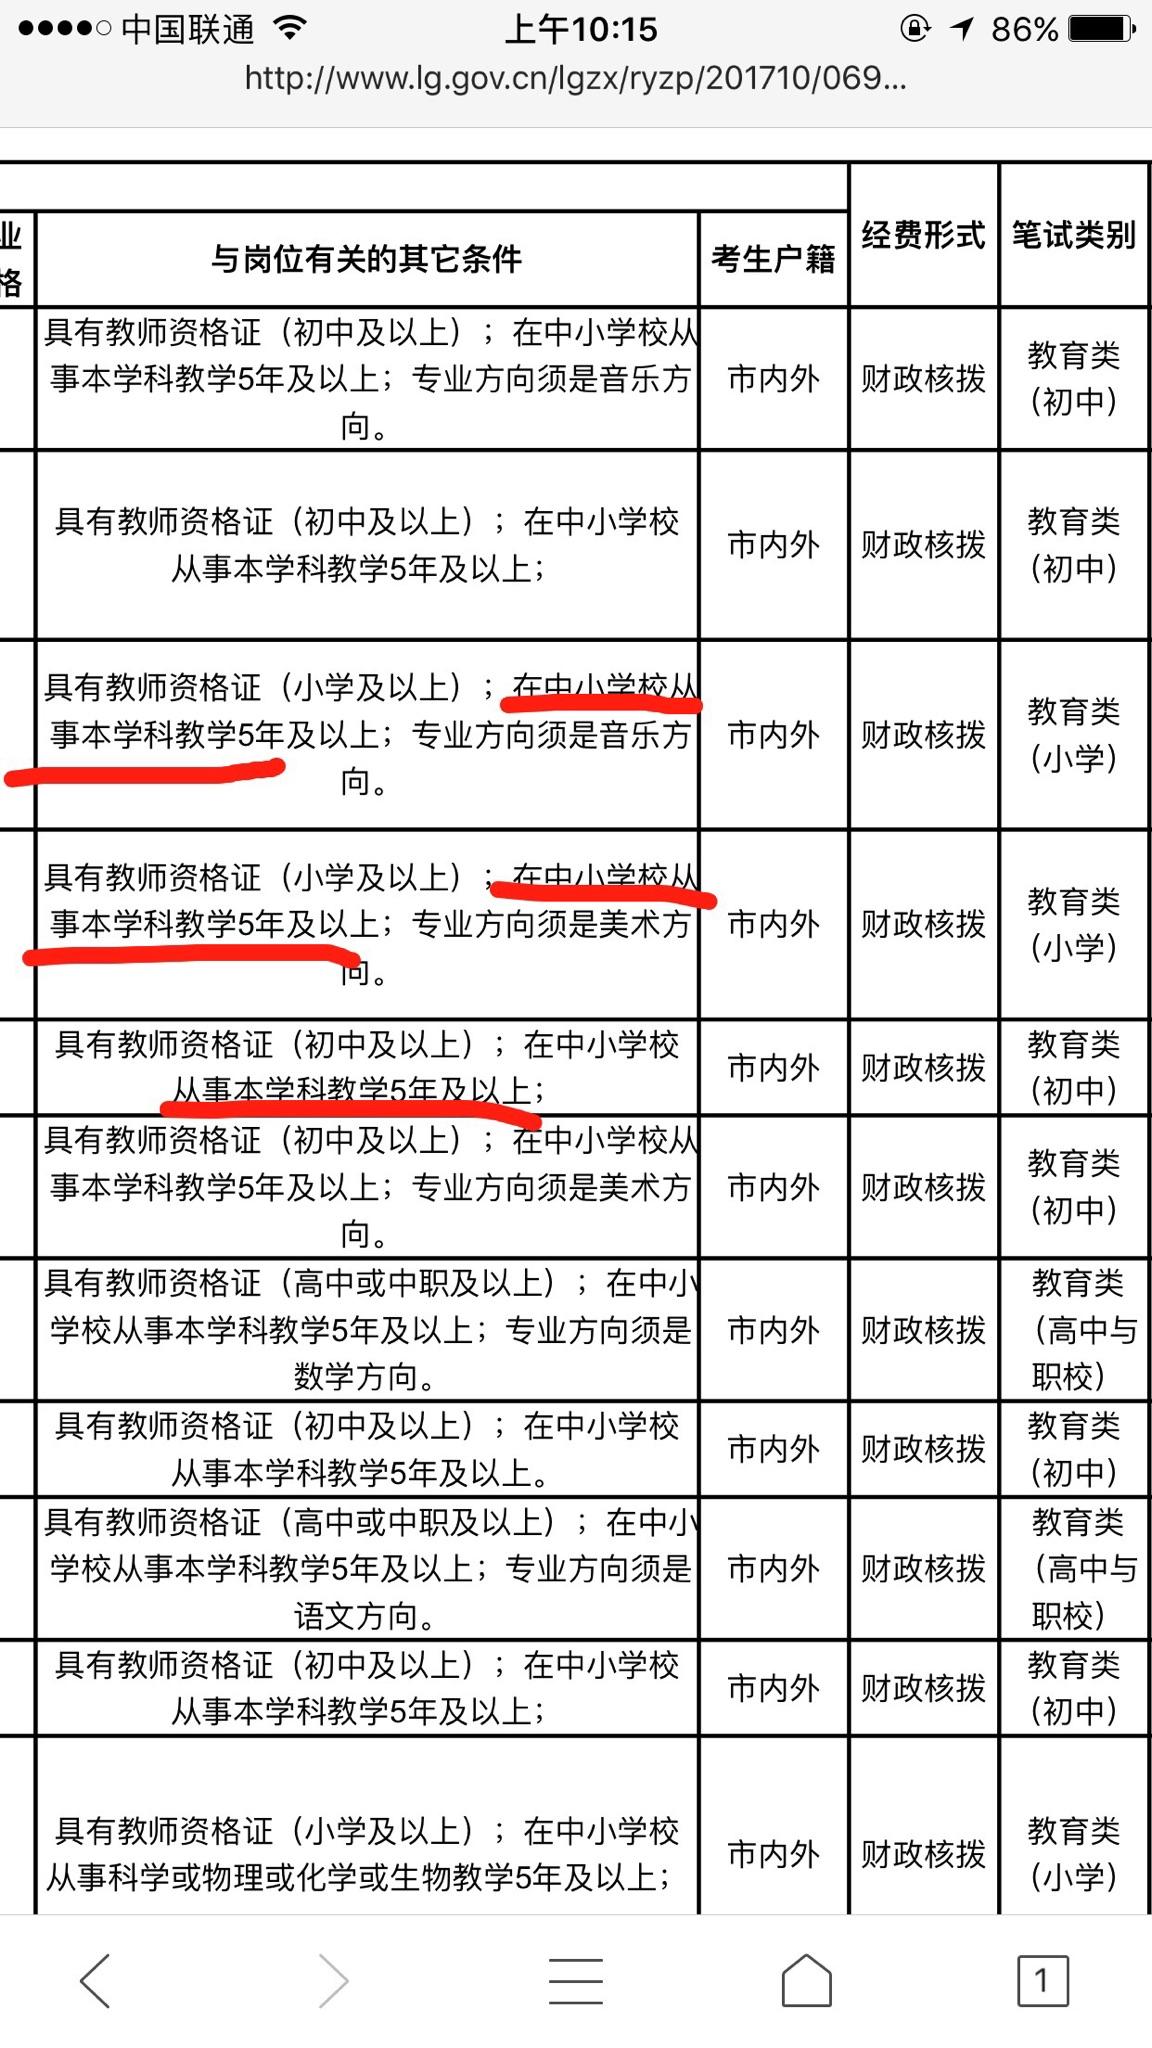 本人将于2018非师范毕业,打算考深圳教师编制